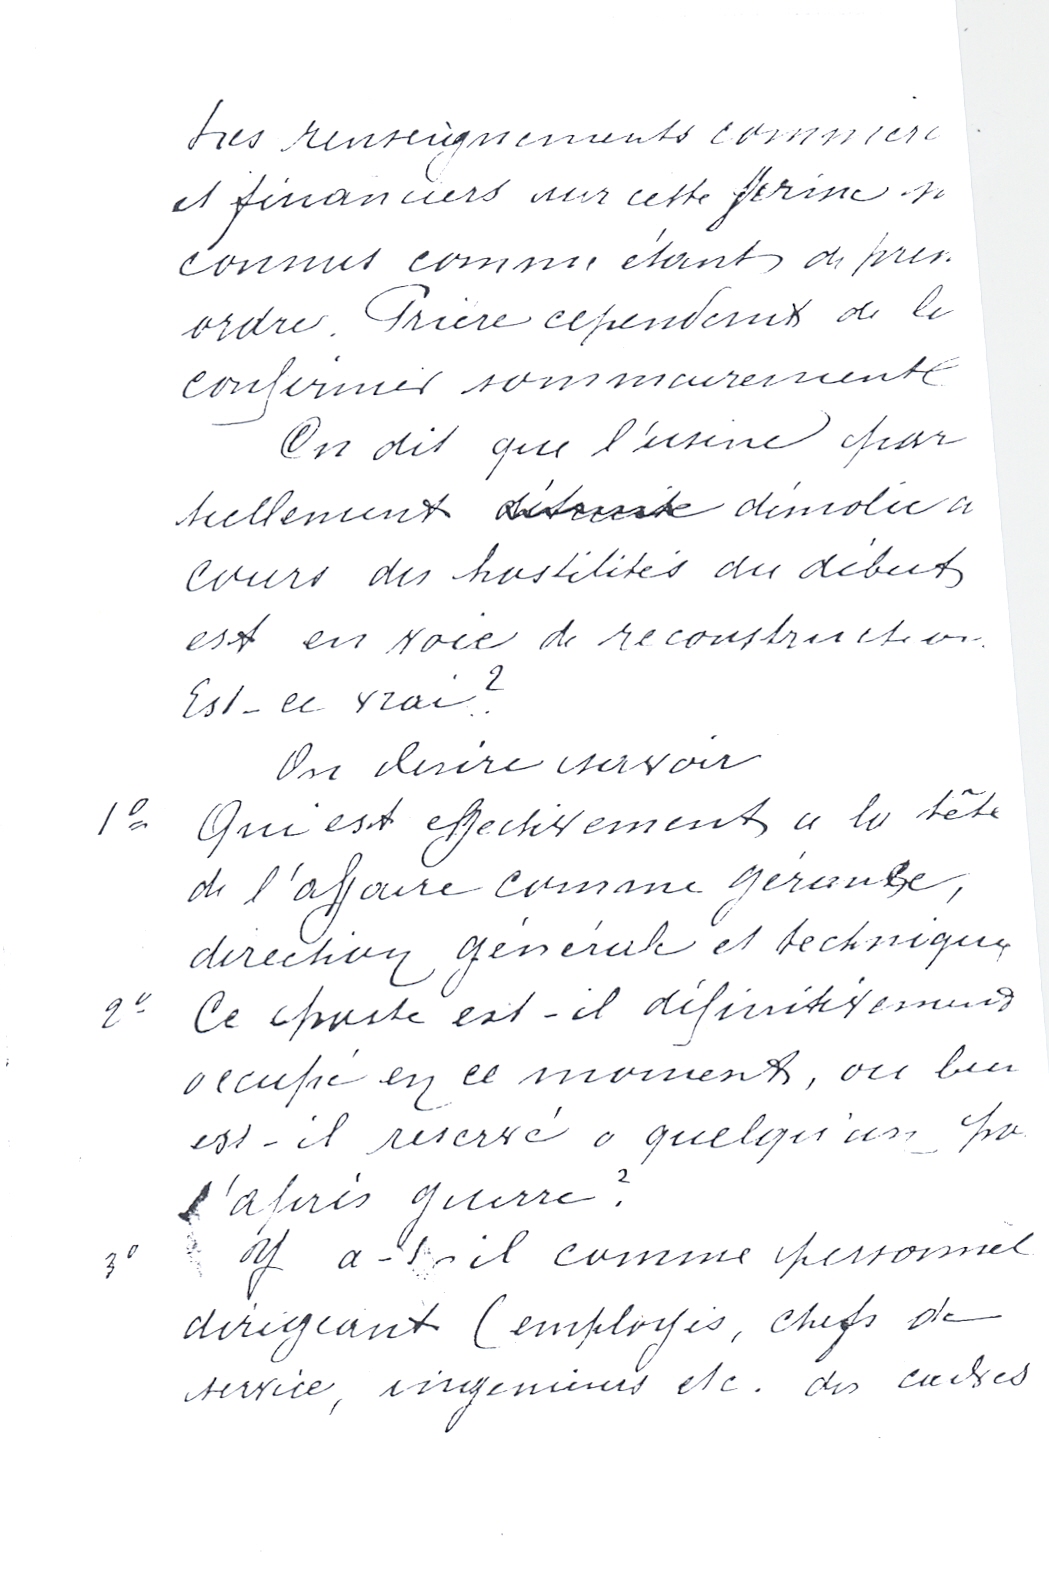 1917 – Copie confidentielle de renseignements demandés sur la Société DJC (30 décembre 1917)